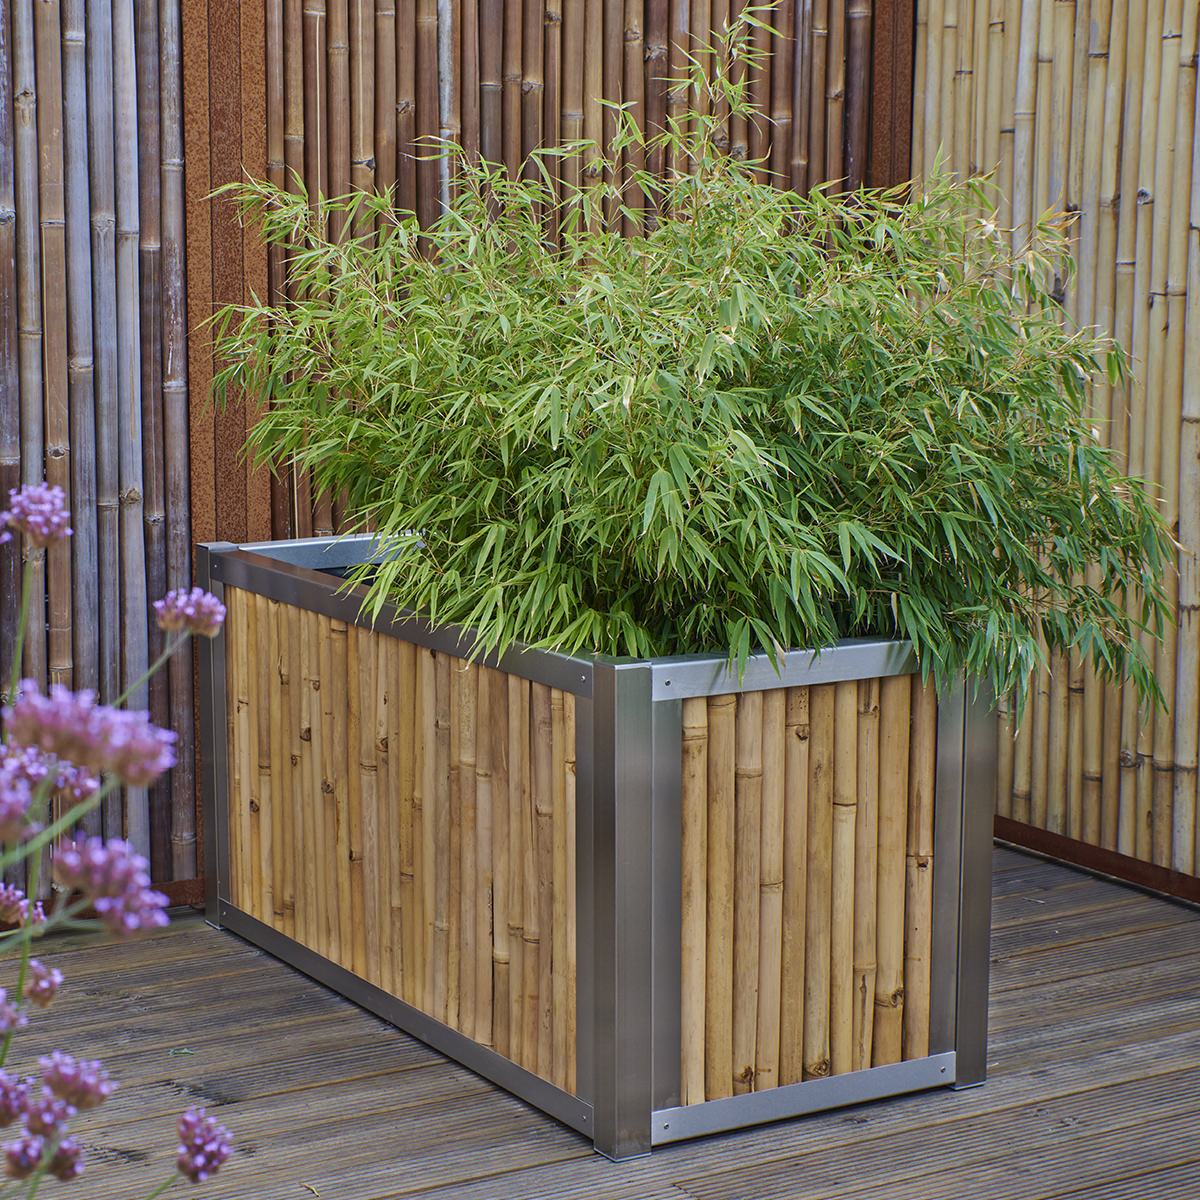 Bepflanztes Hochbeet oder Pflanztrog aus hellem Bambus mit Edelstahlrahmen.